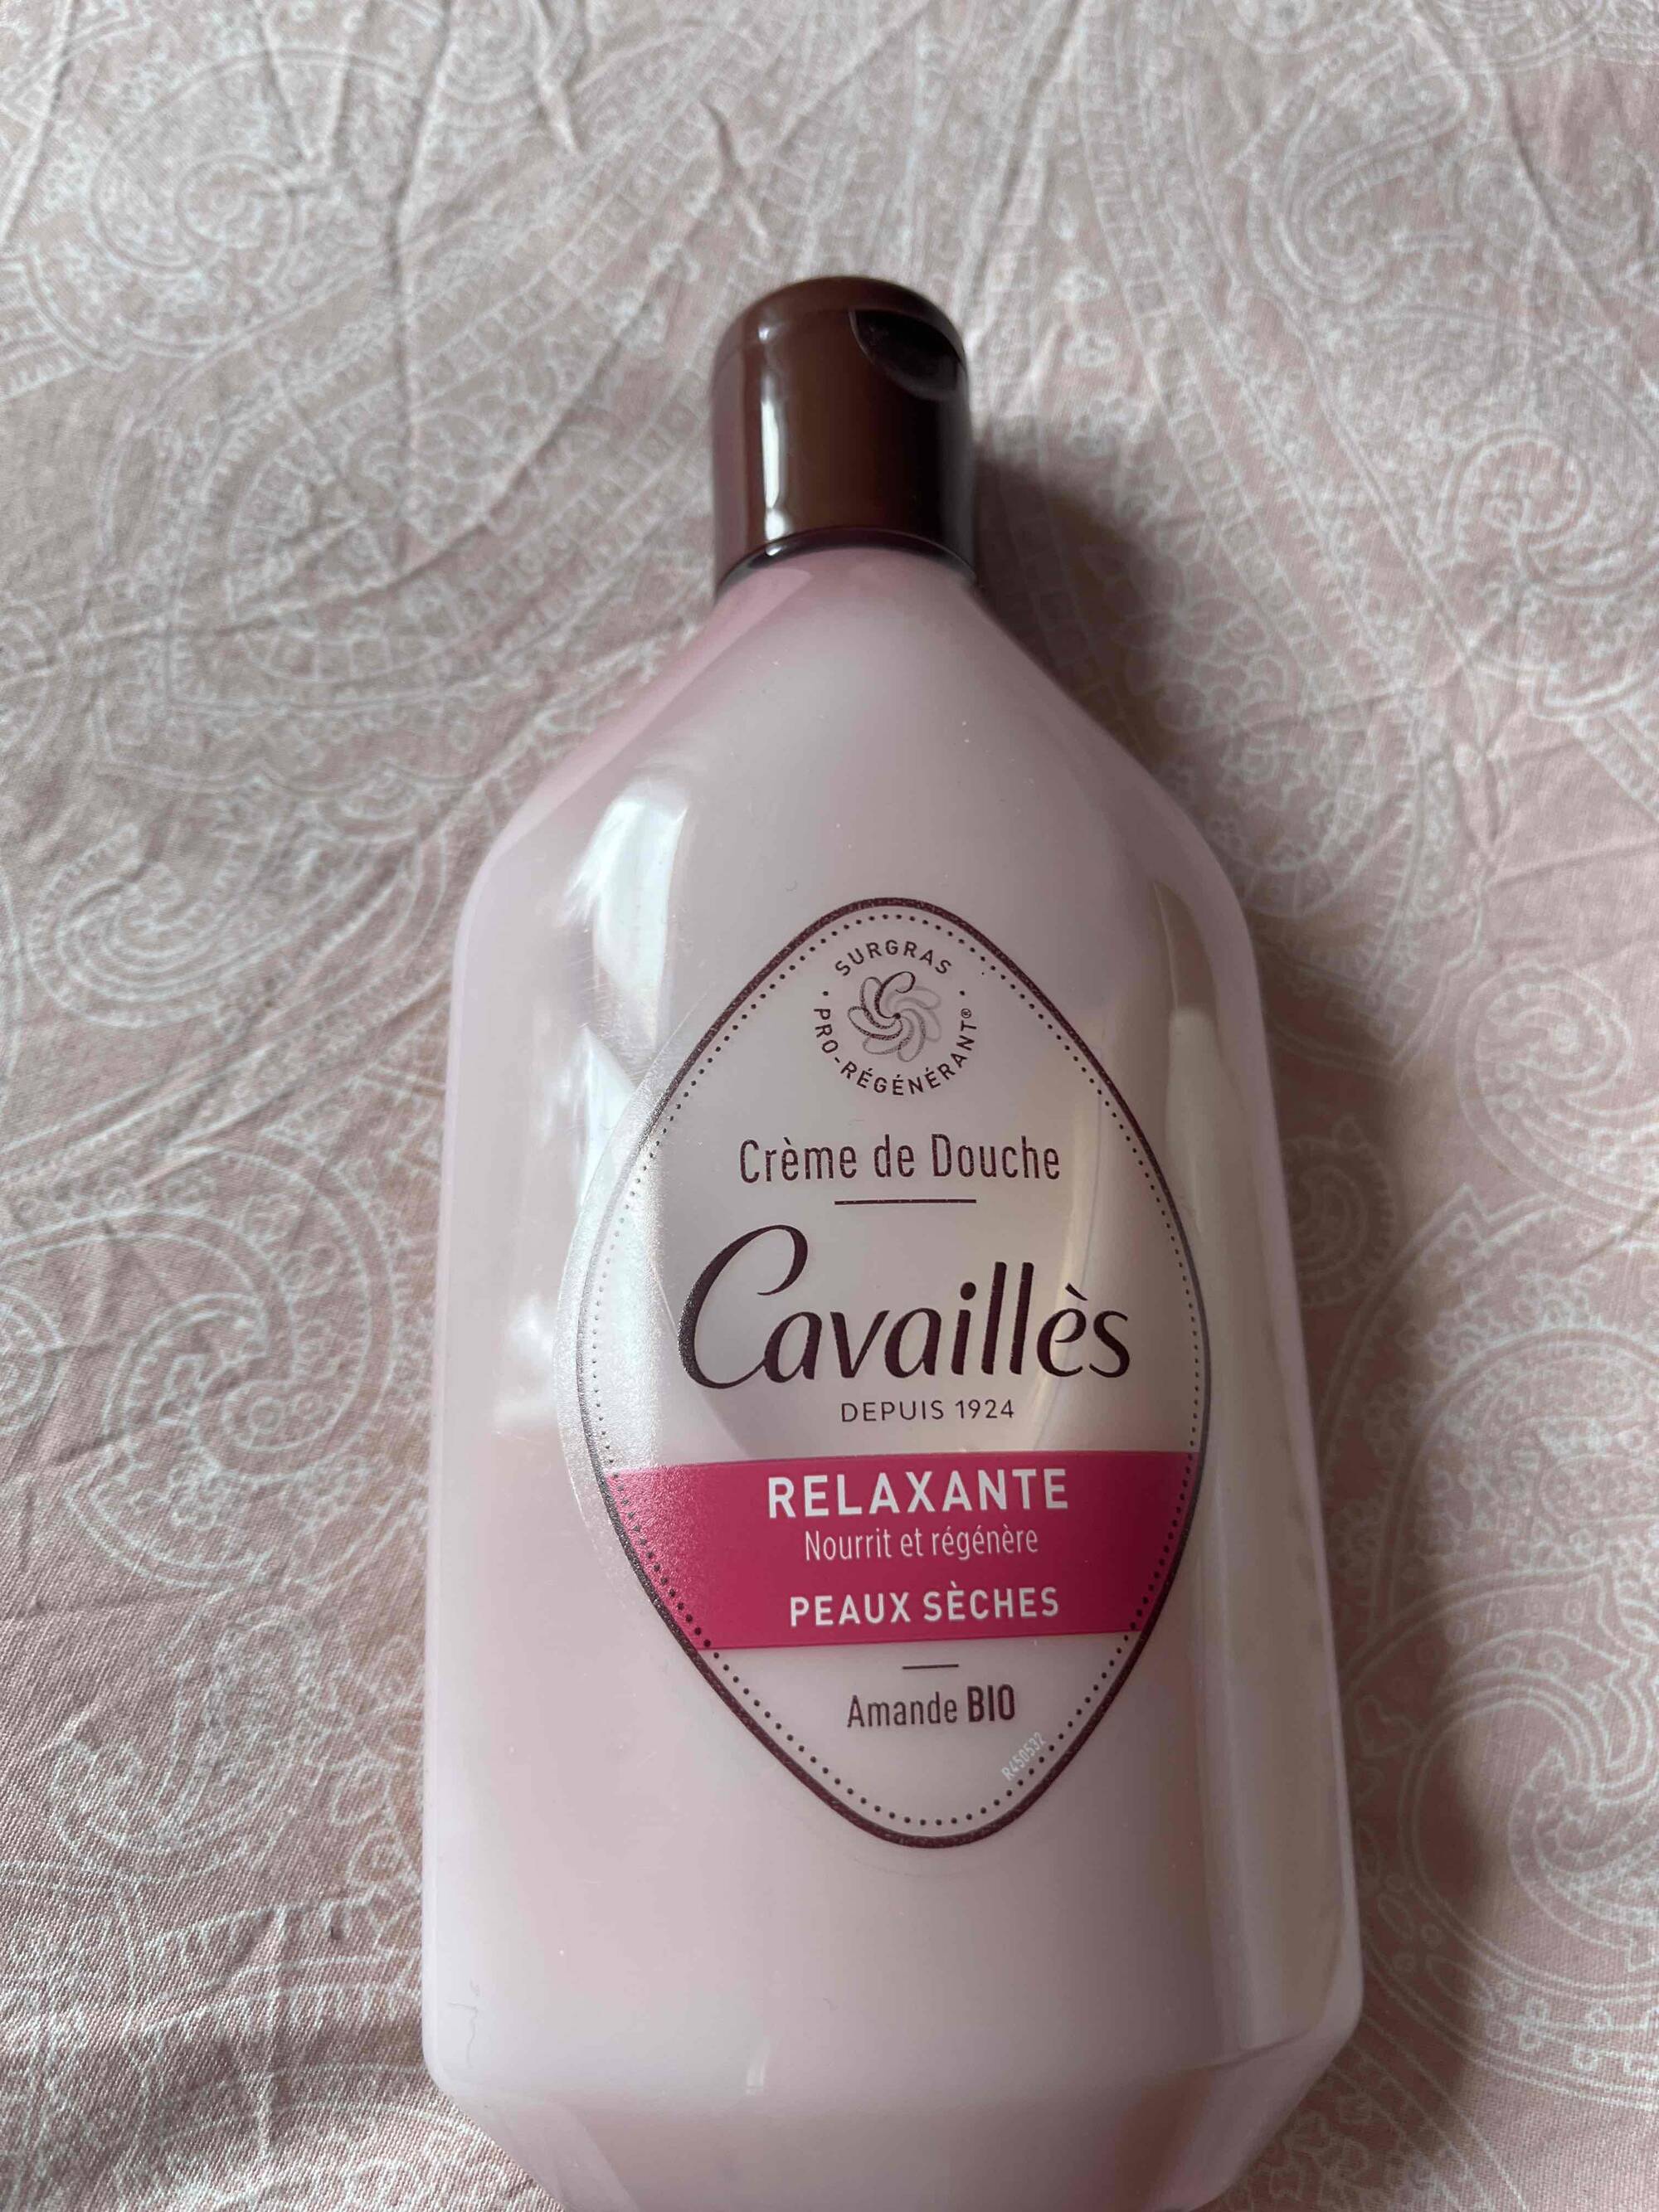 CAVAILLES - Peau sèches - Crème de douche relaxante